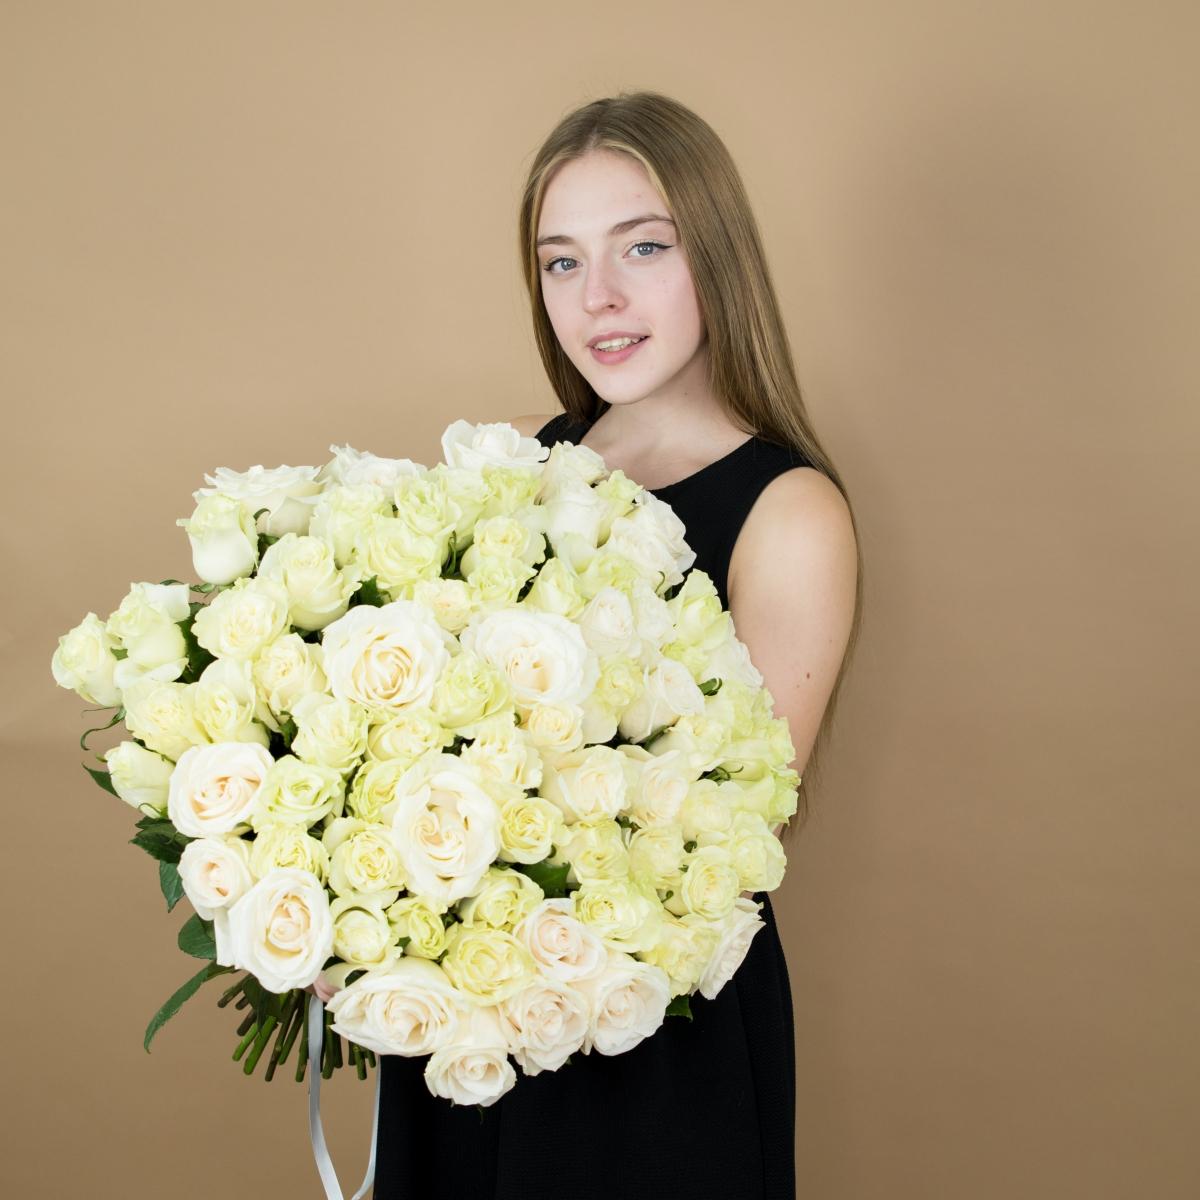 Букет из белых роз 101 шт 40 см (Эквадор) код товара - 89910